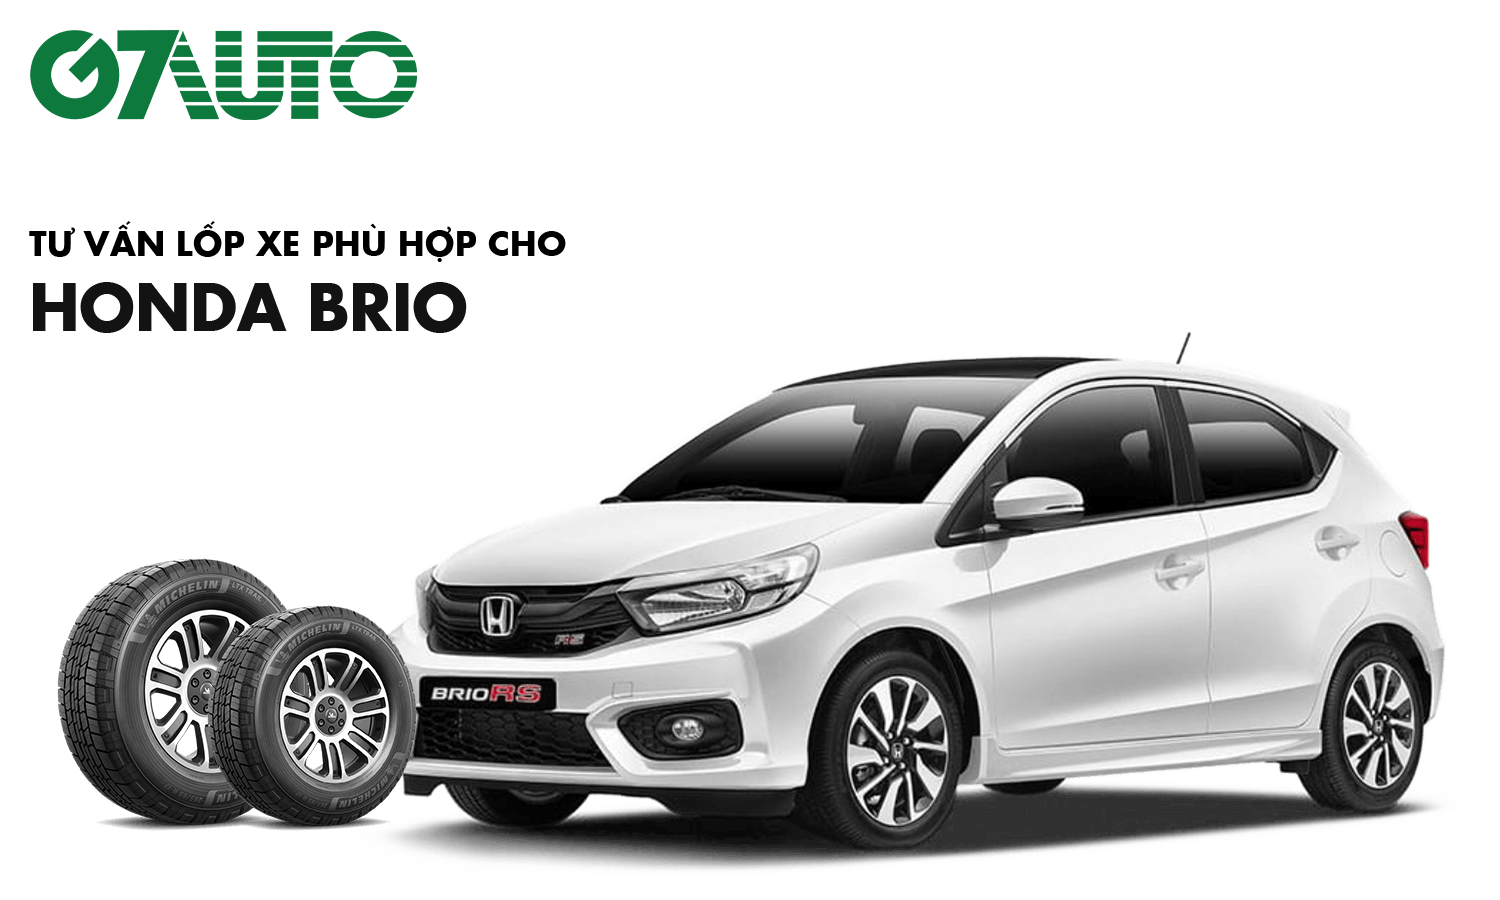 Mua xe Honda Brio G trả góp Bán xe Brio G 2022 giá rẻ